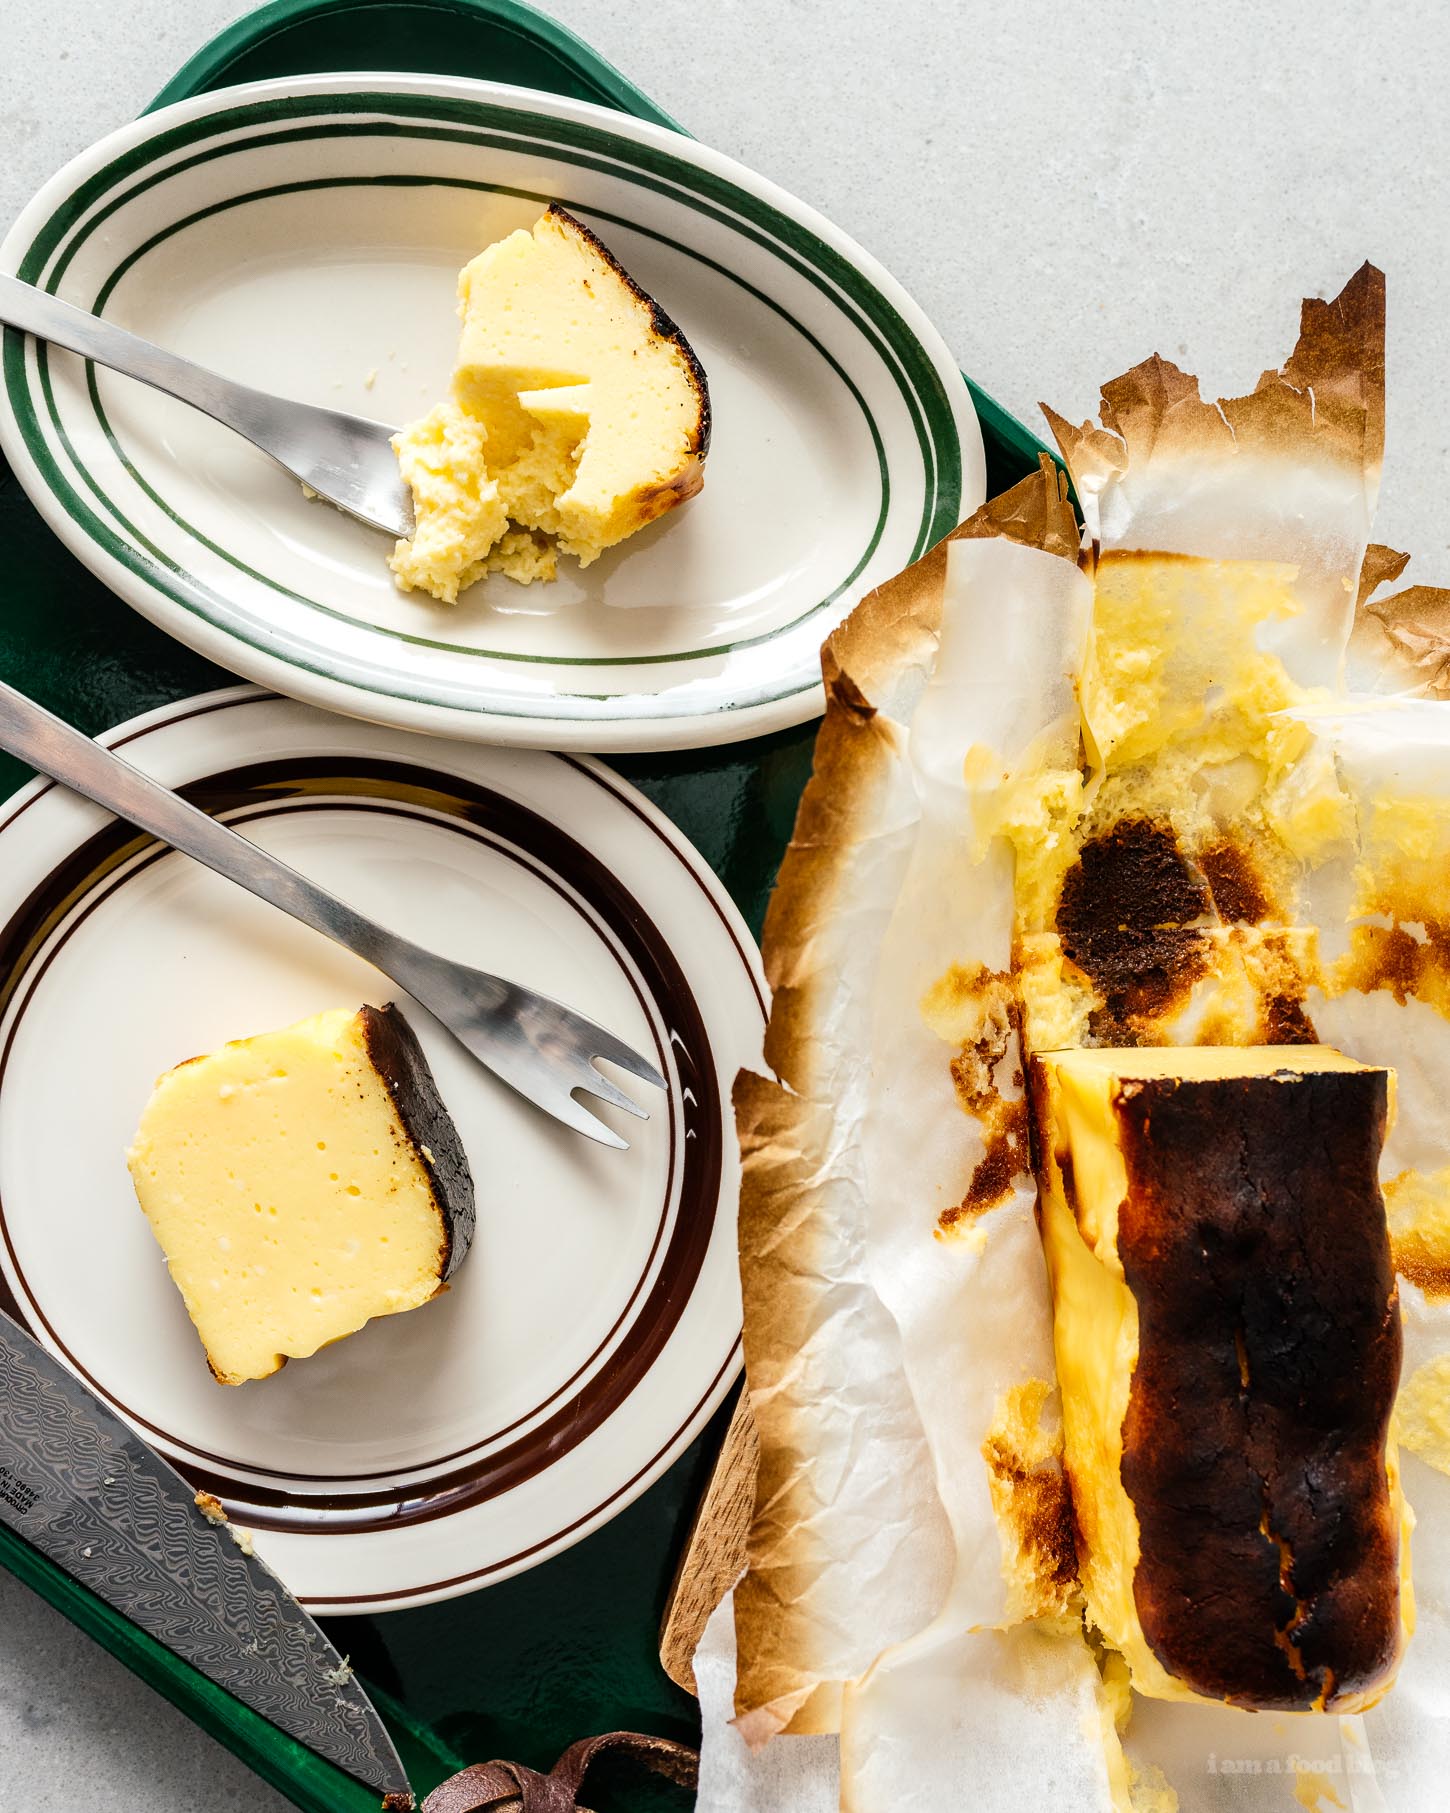 Receta de pastel de queso vasco quemado en lotes pequeños |  www.iamafoodblog.com